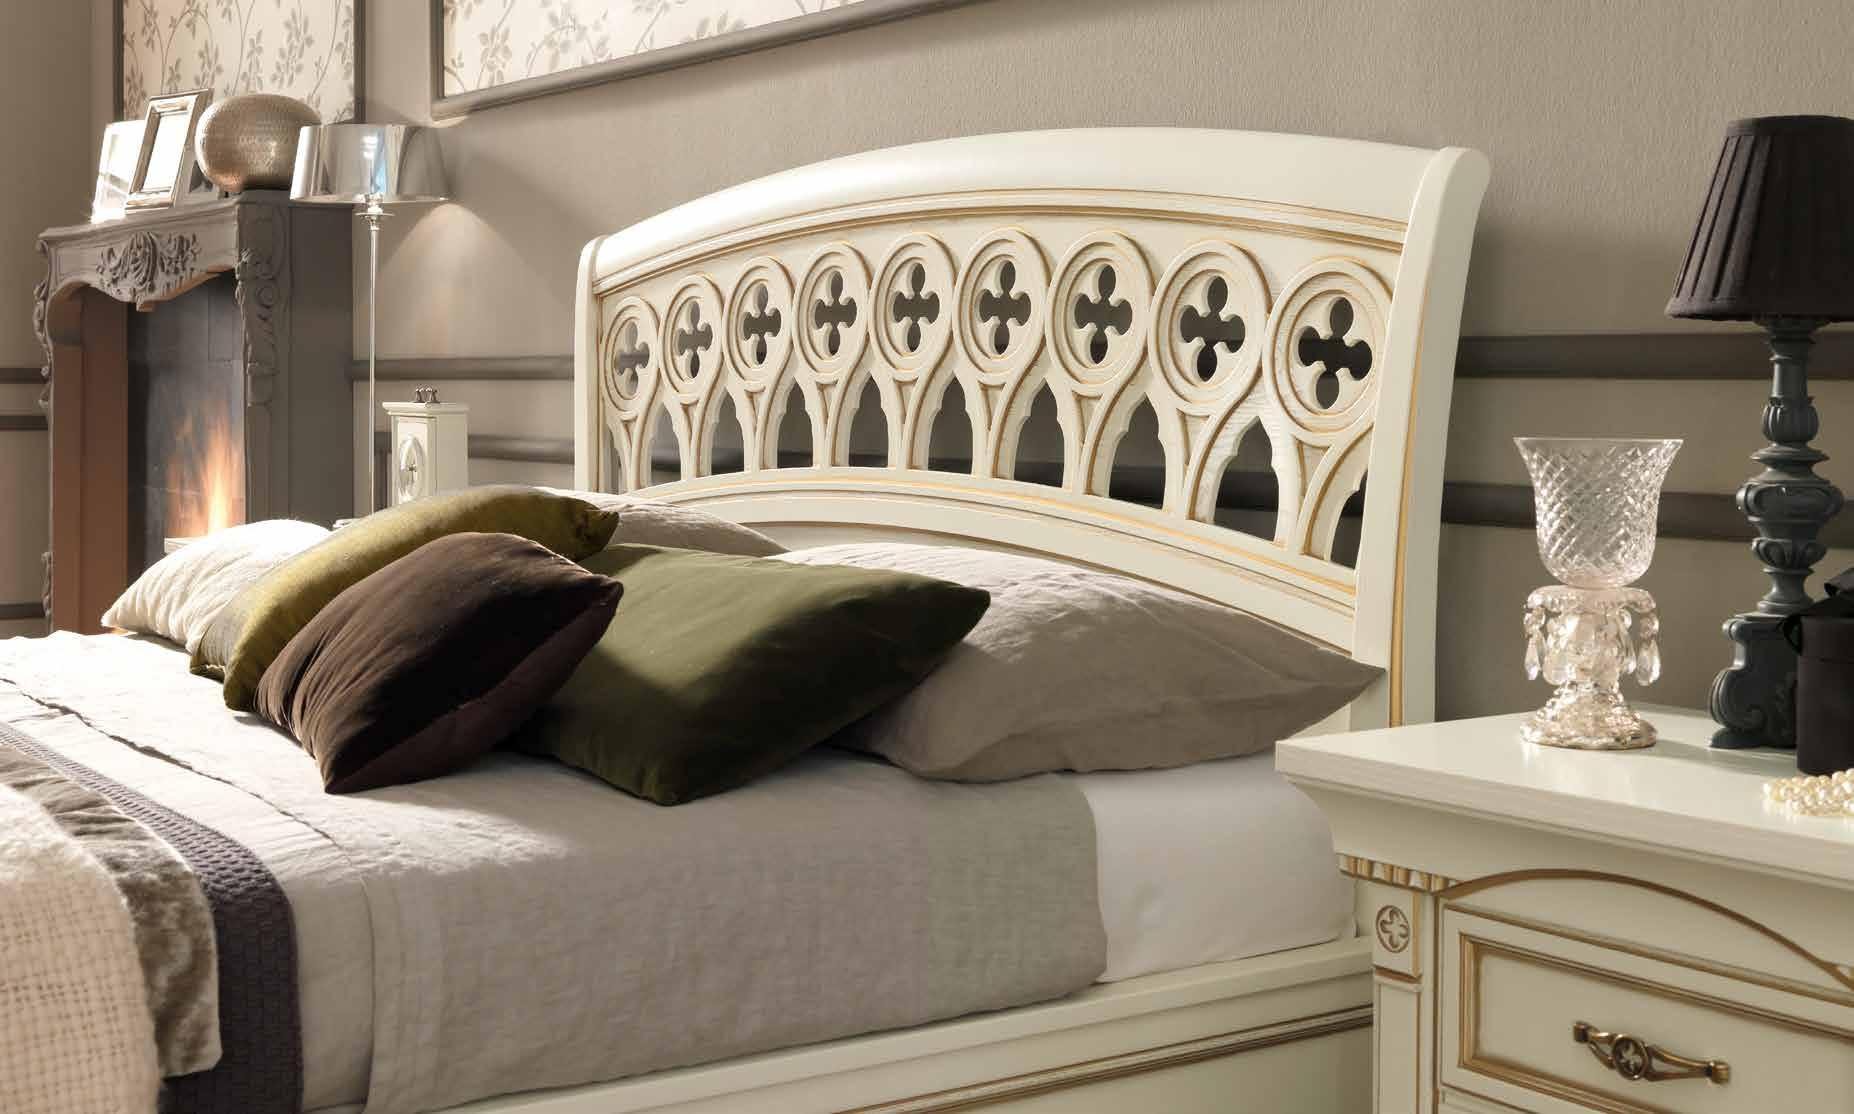 Кровать Prama Palazzo Ducale laccato, двуспальная, без изножья, цвет: белый с золотом, 180x200 см (71BO25LT)71BO25LT